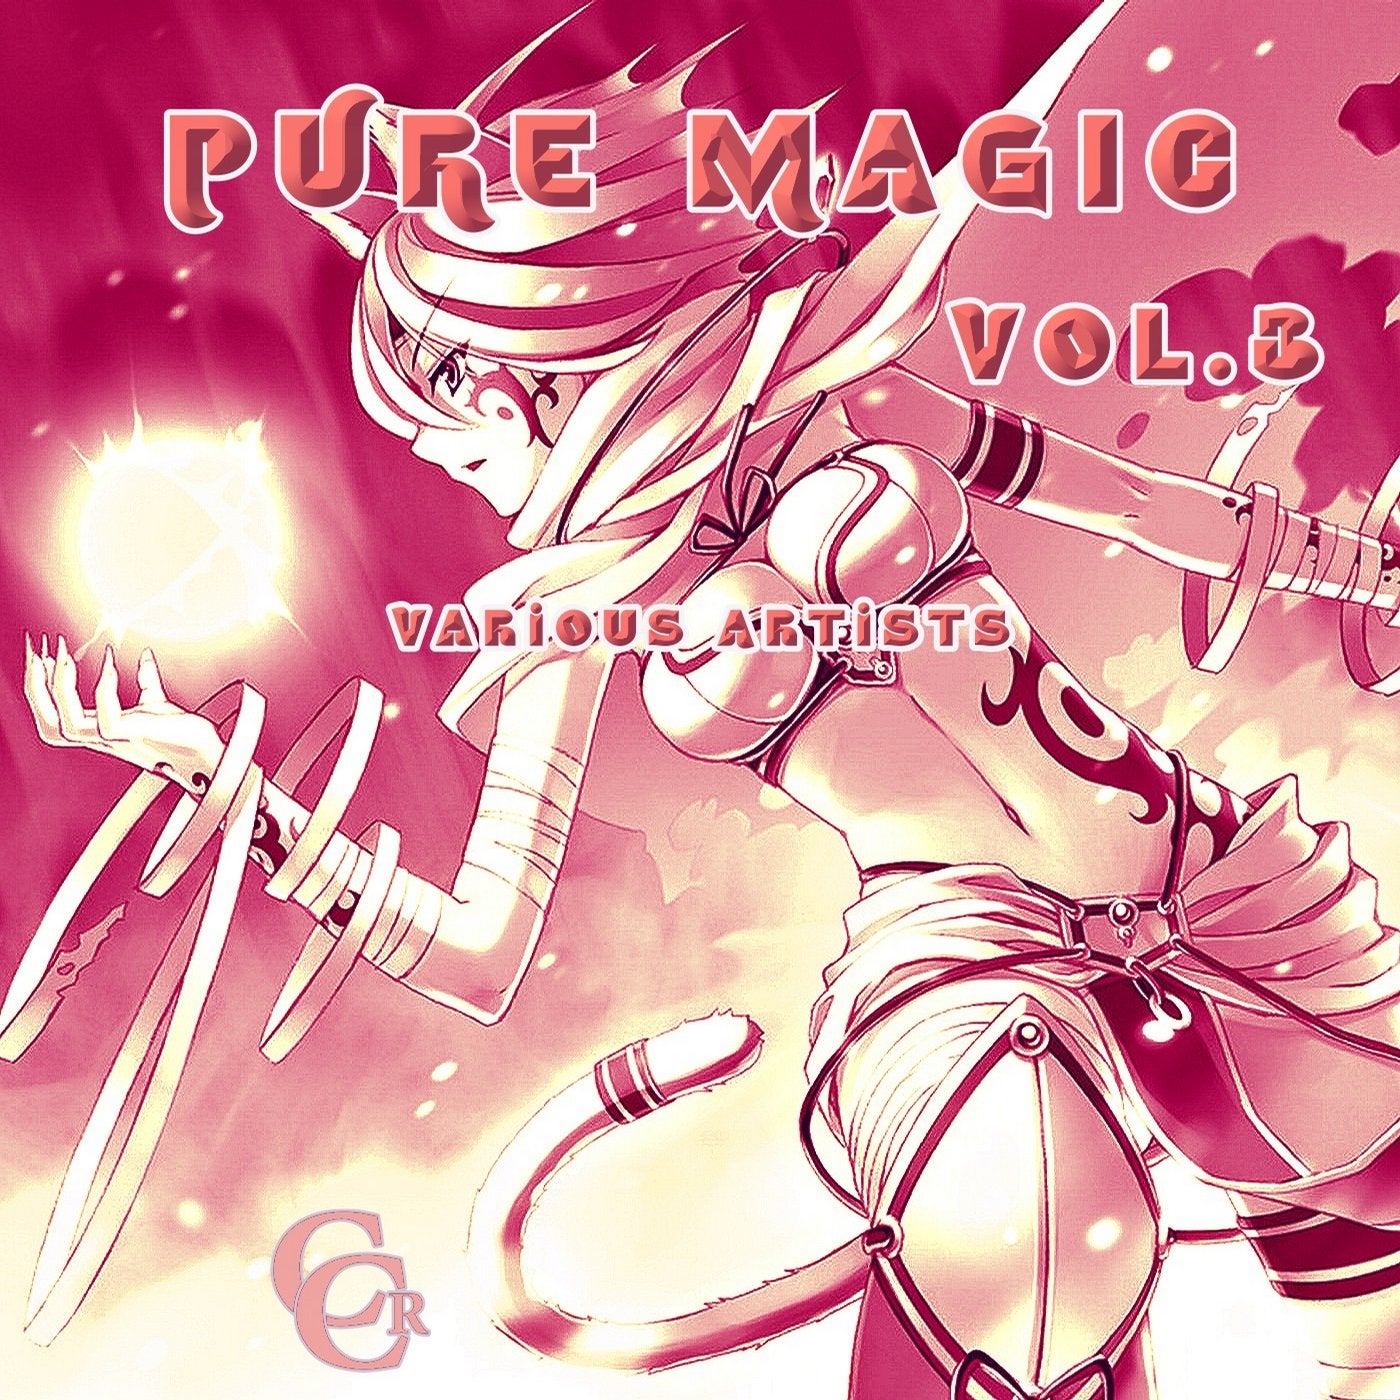 Pure Magic Vol.3